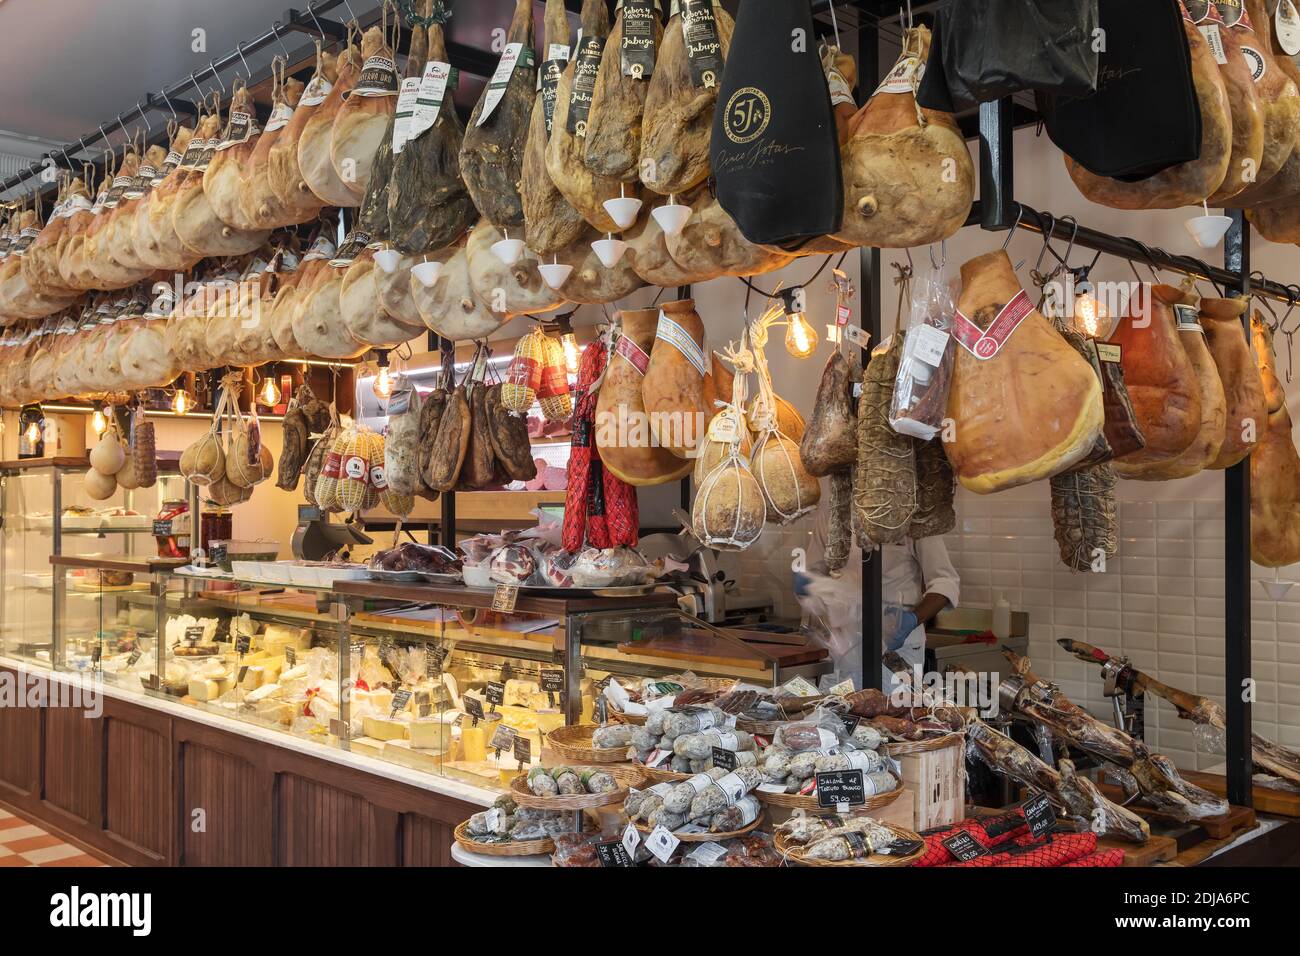 Negozio di gastronomia italiana tradizionale con diversi tipi di carne e formaggio. Foto Stock